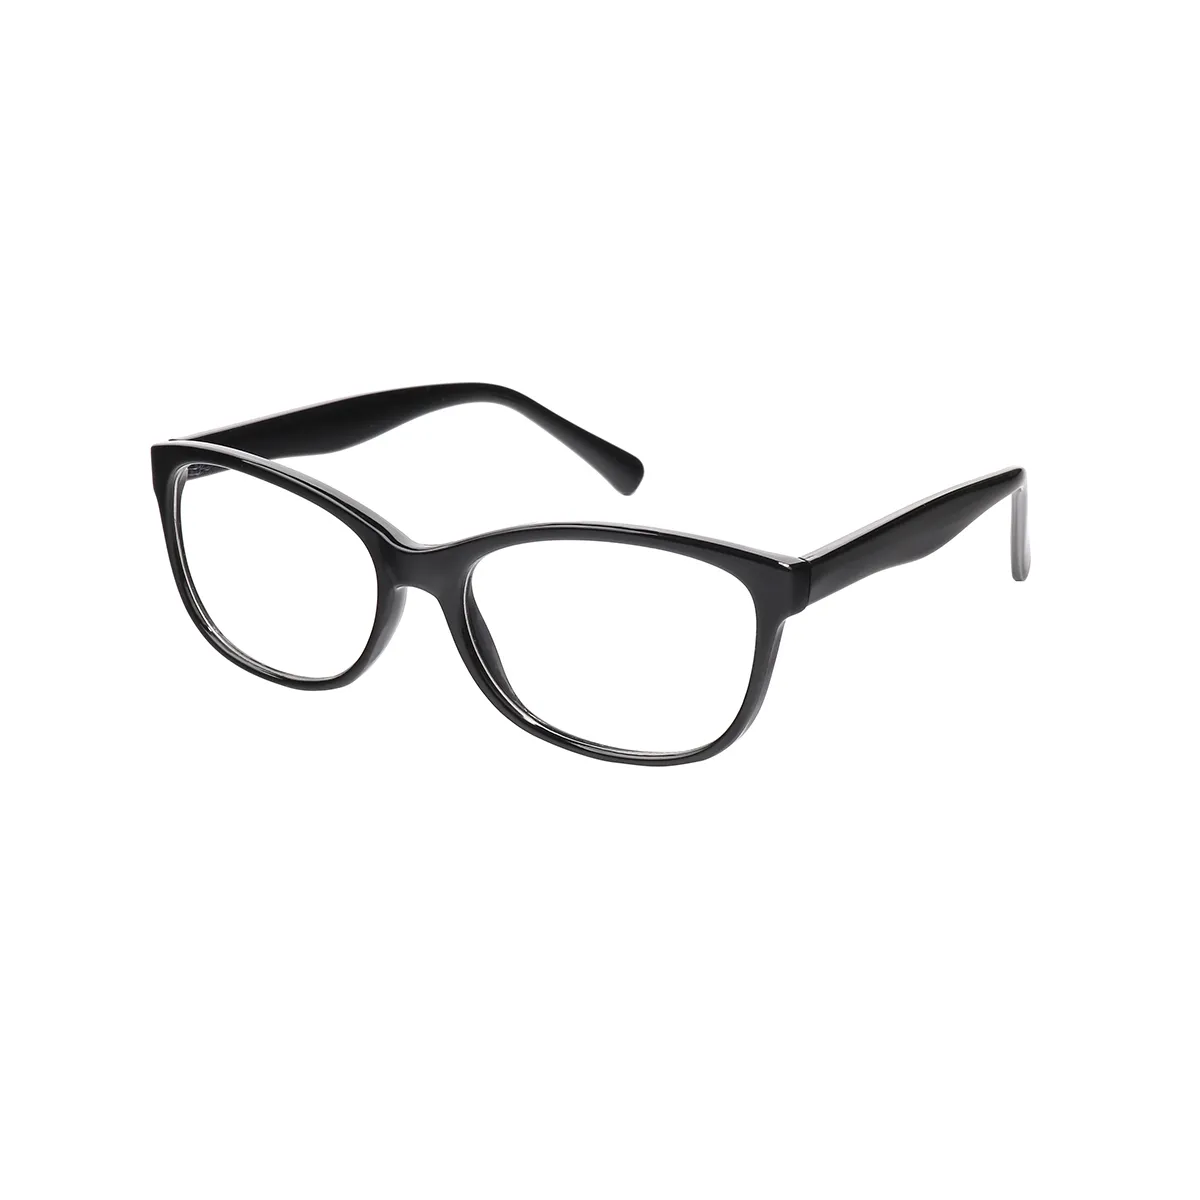 Classic Square Black Eyeglasses for Women